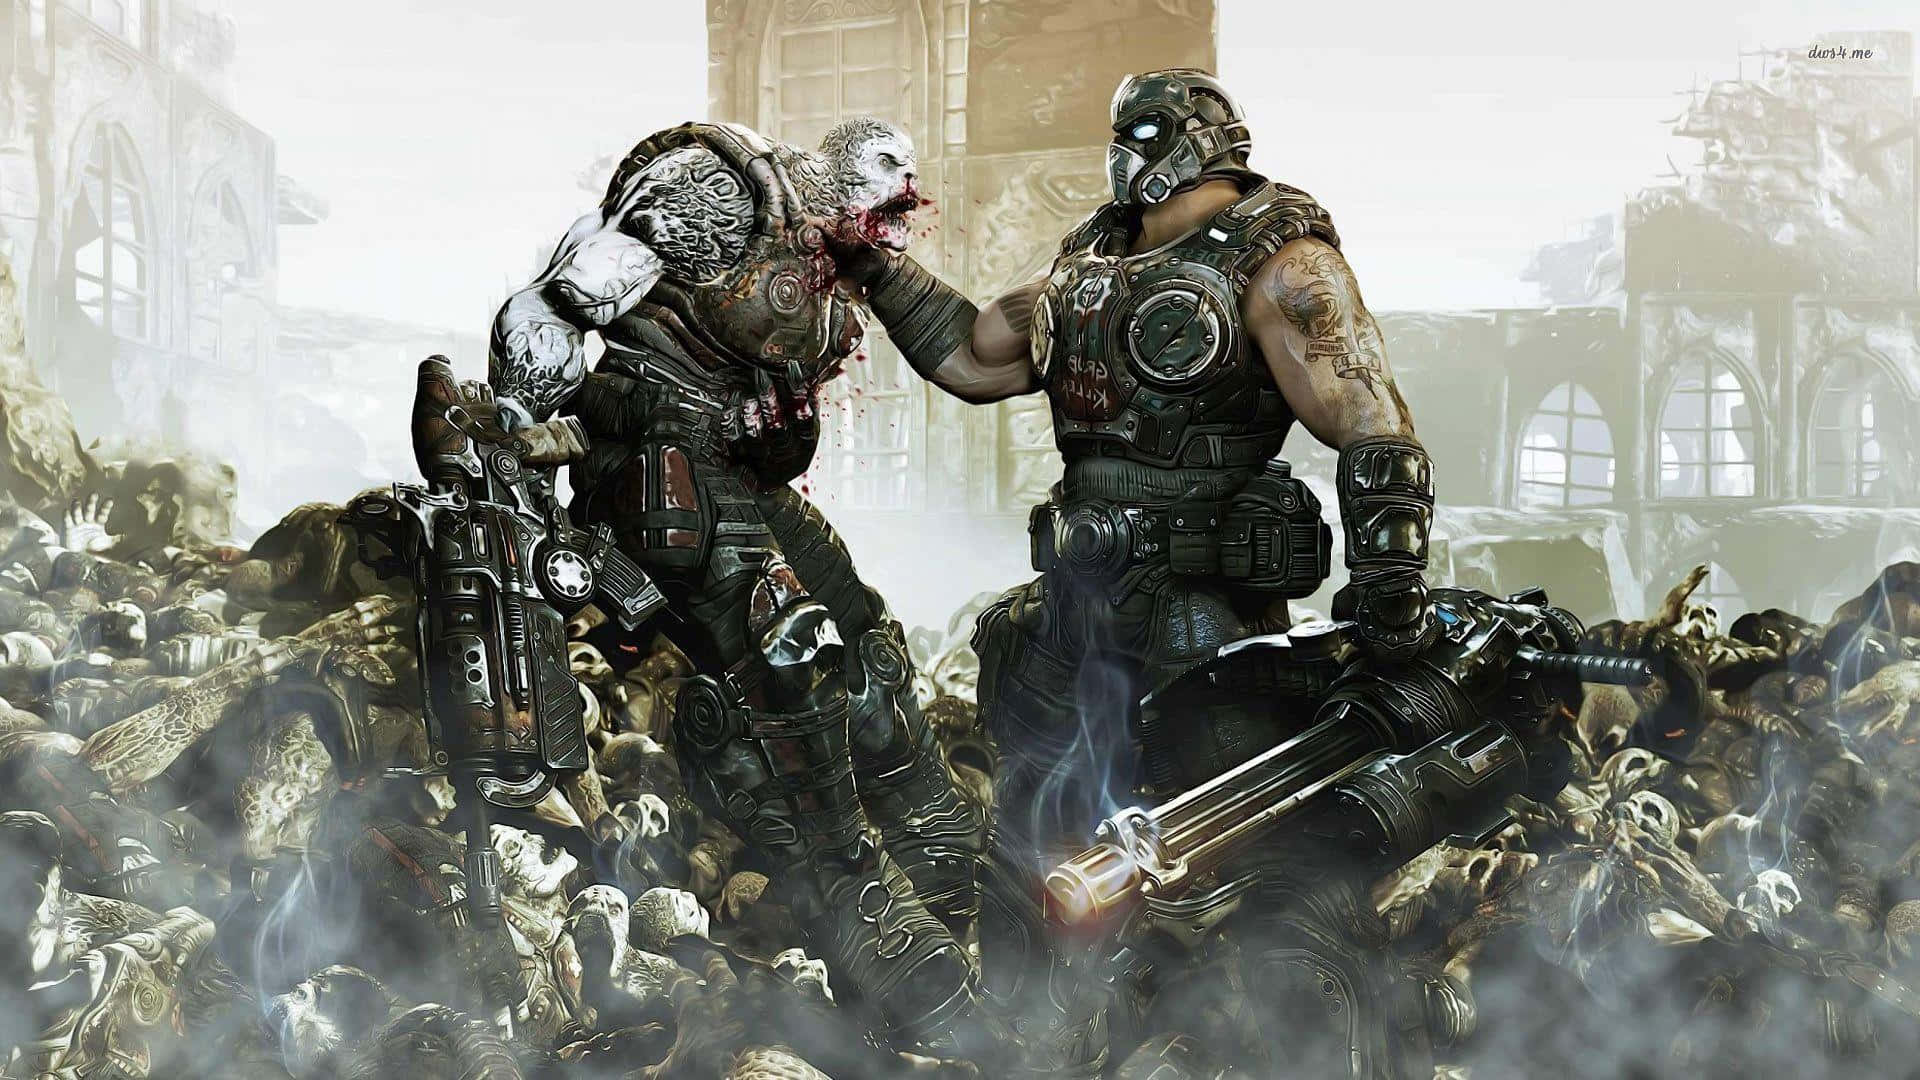 Fondode Pantalla De Gears Of War 3. Fondo de pantalla